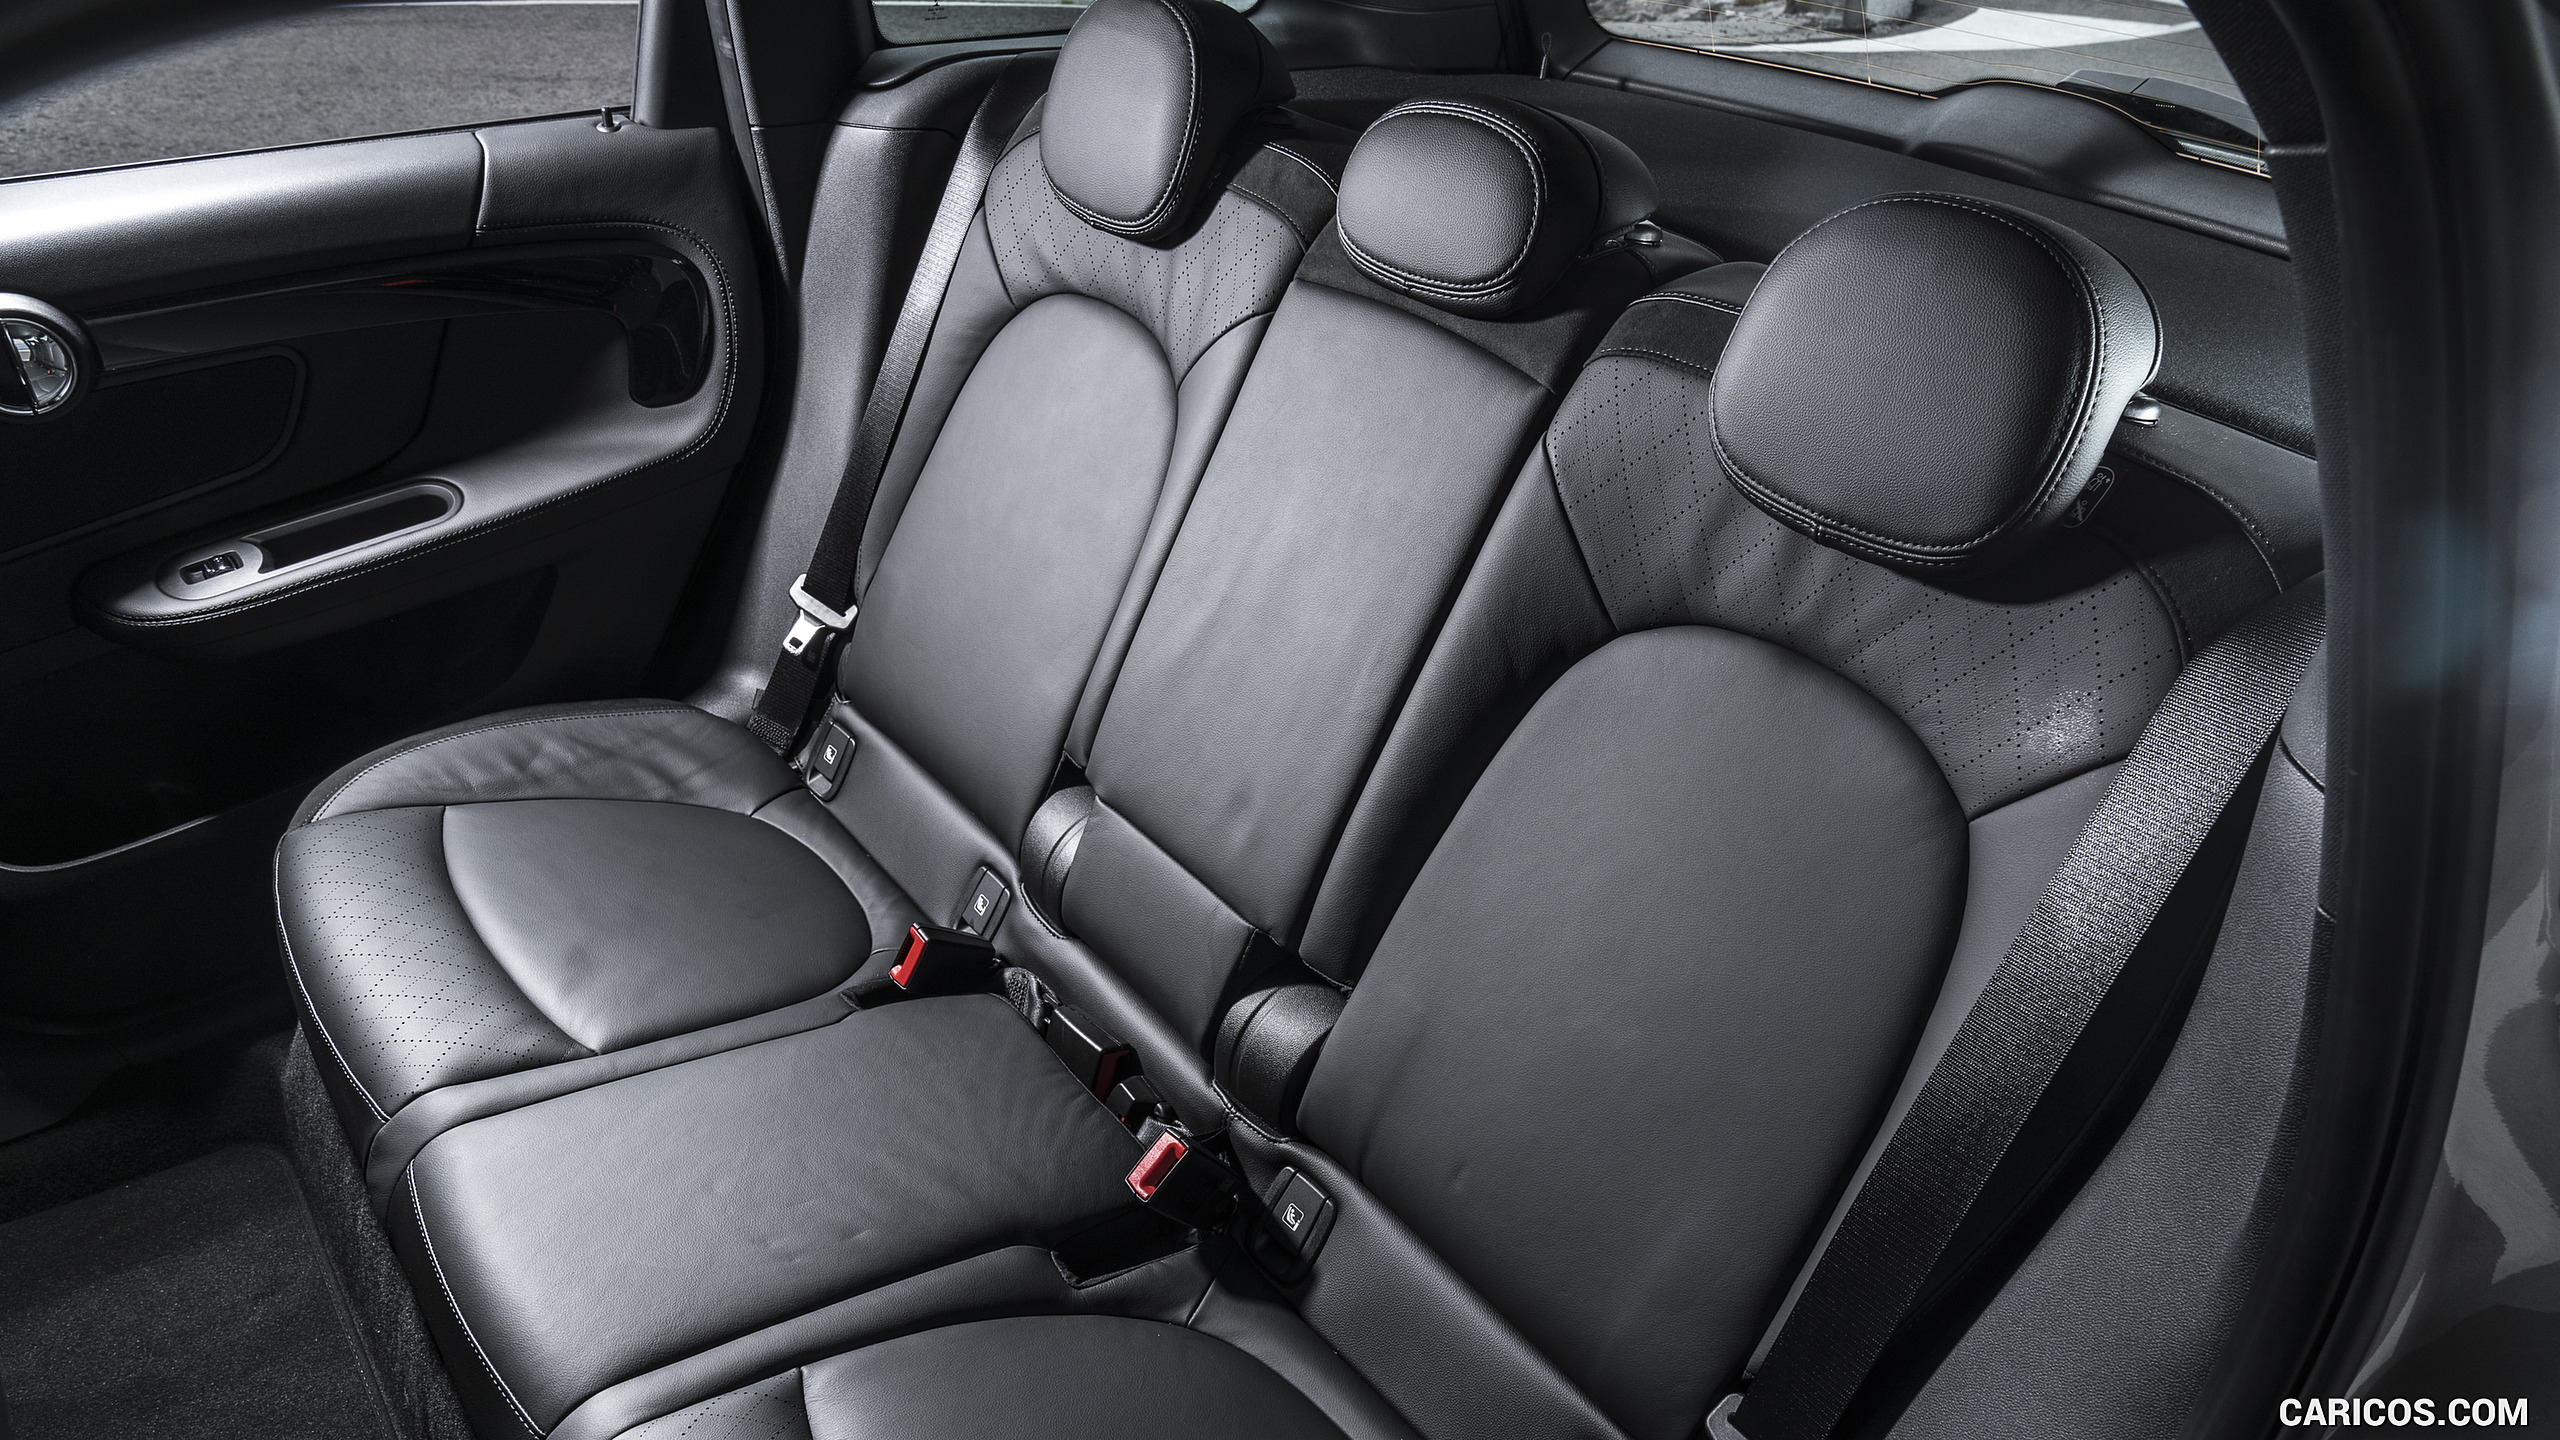 2018 MINI Cooper S E Countryman ALL4 Plug-In Hybrid - Interior, Rear Seats, #93 of 125